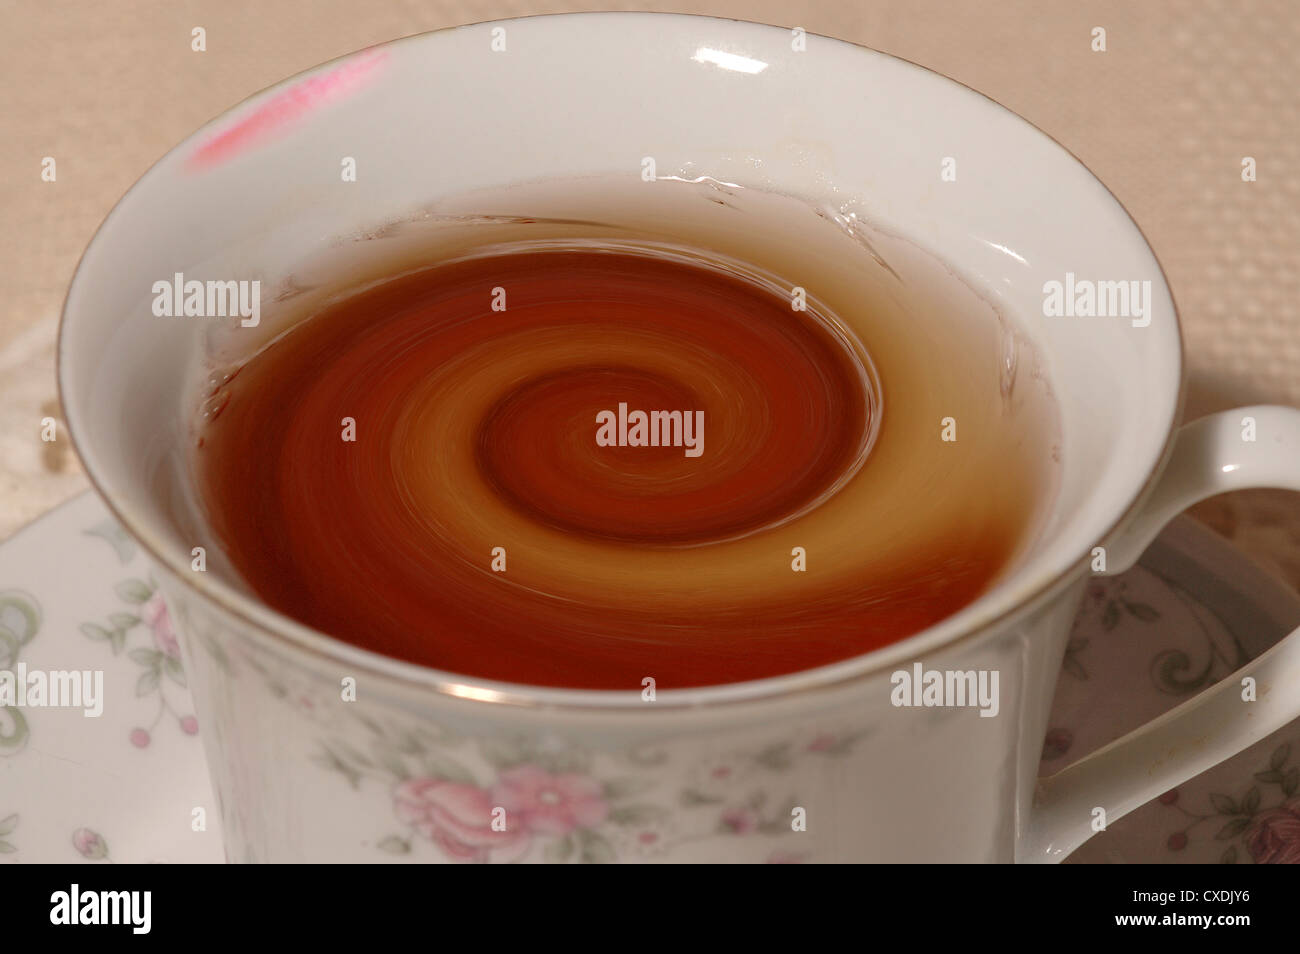 Tazza da tè riempita con tè vorticoso, con macchie di rossetto. Foto Stock